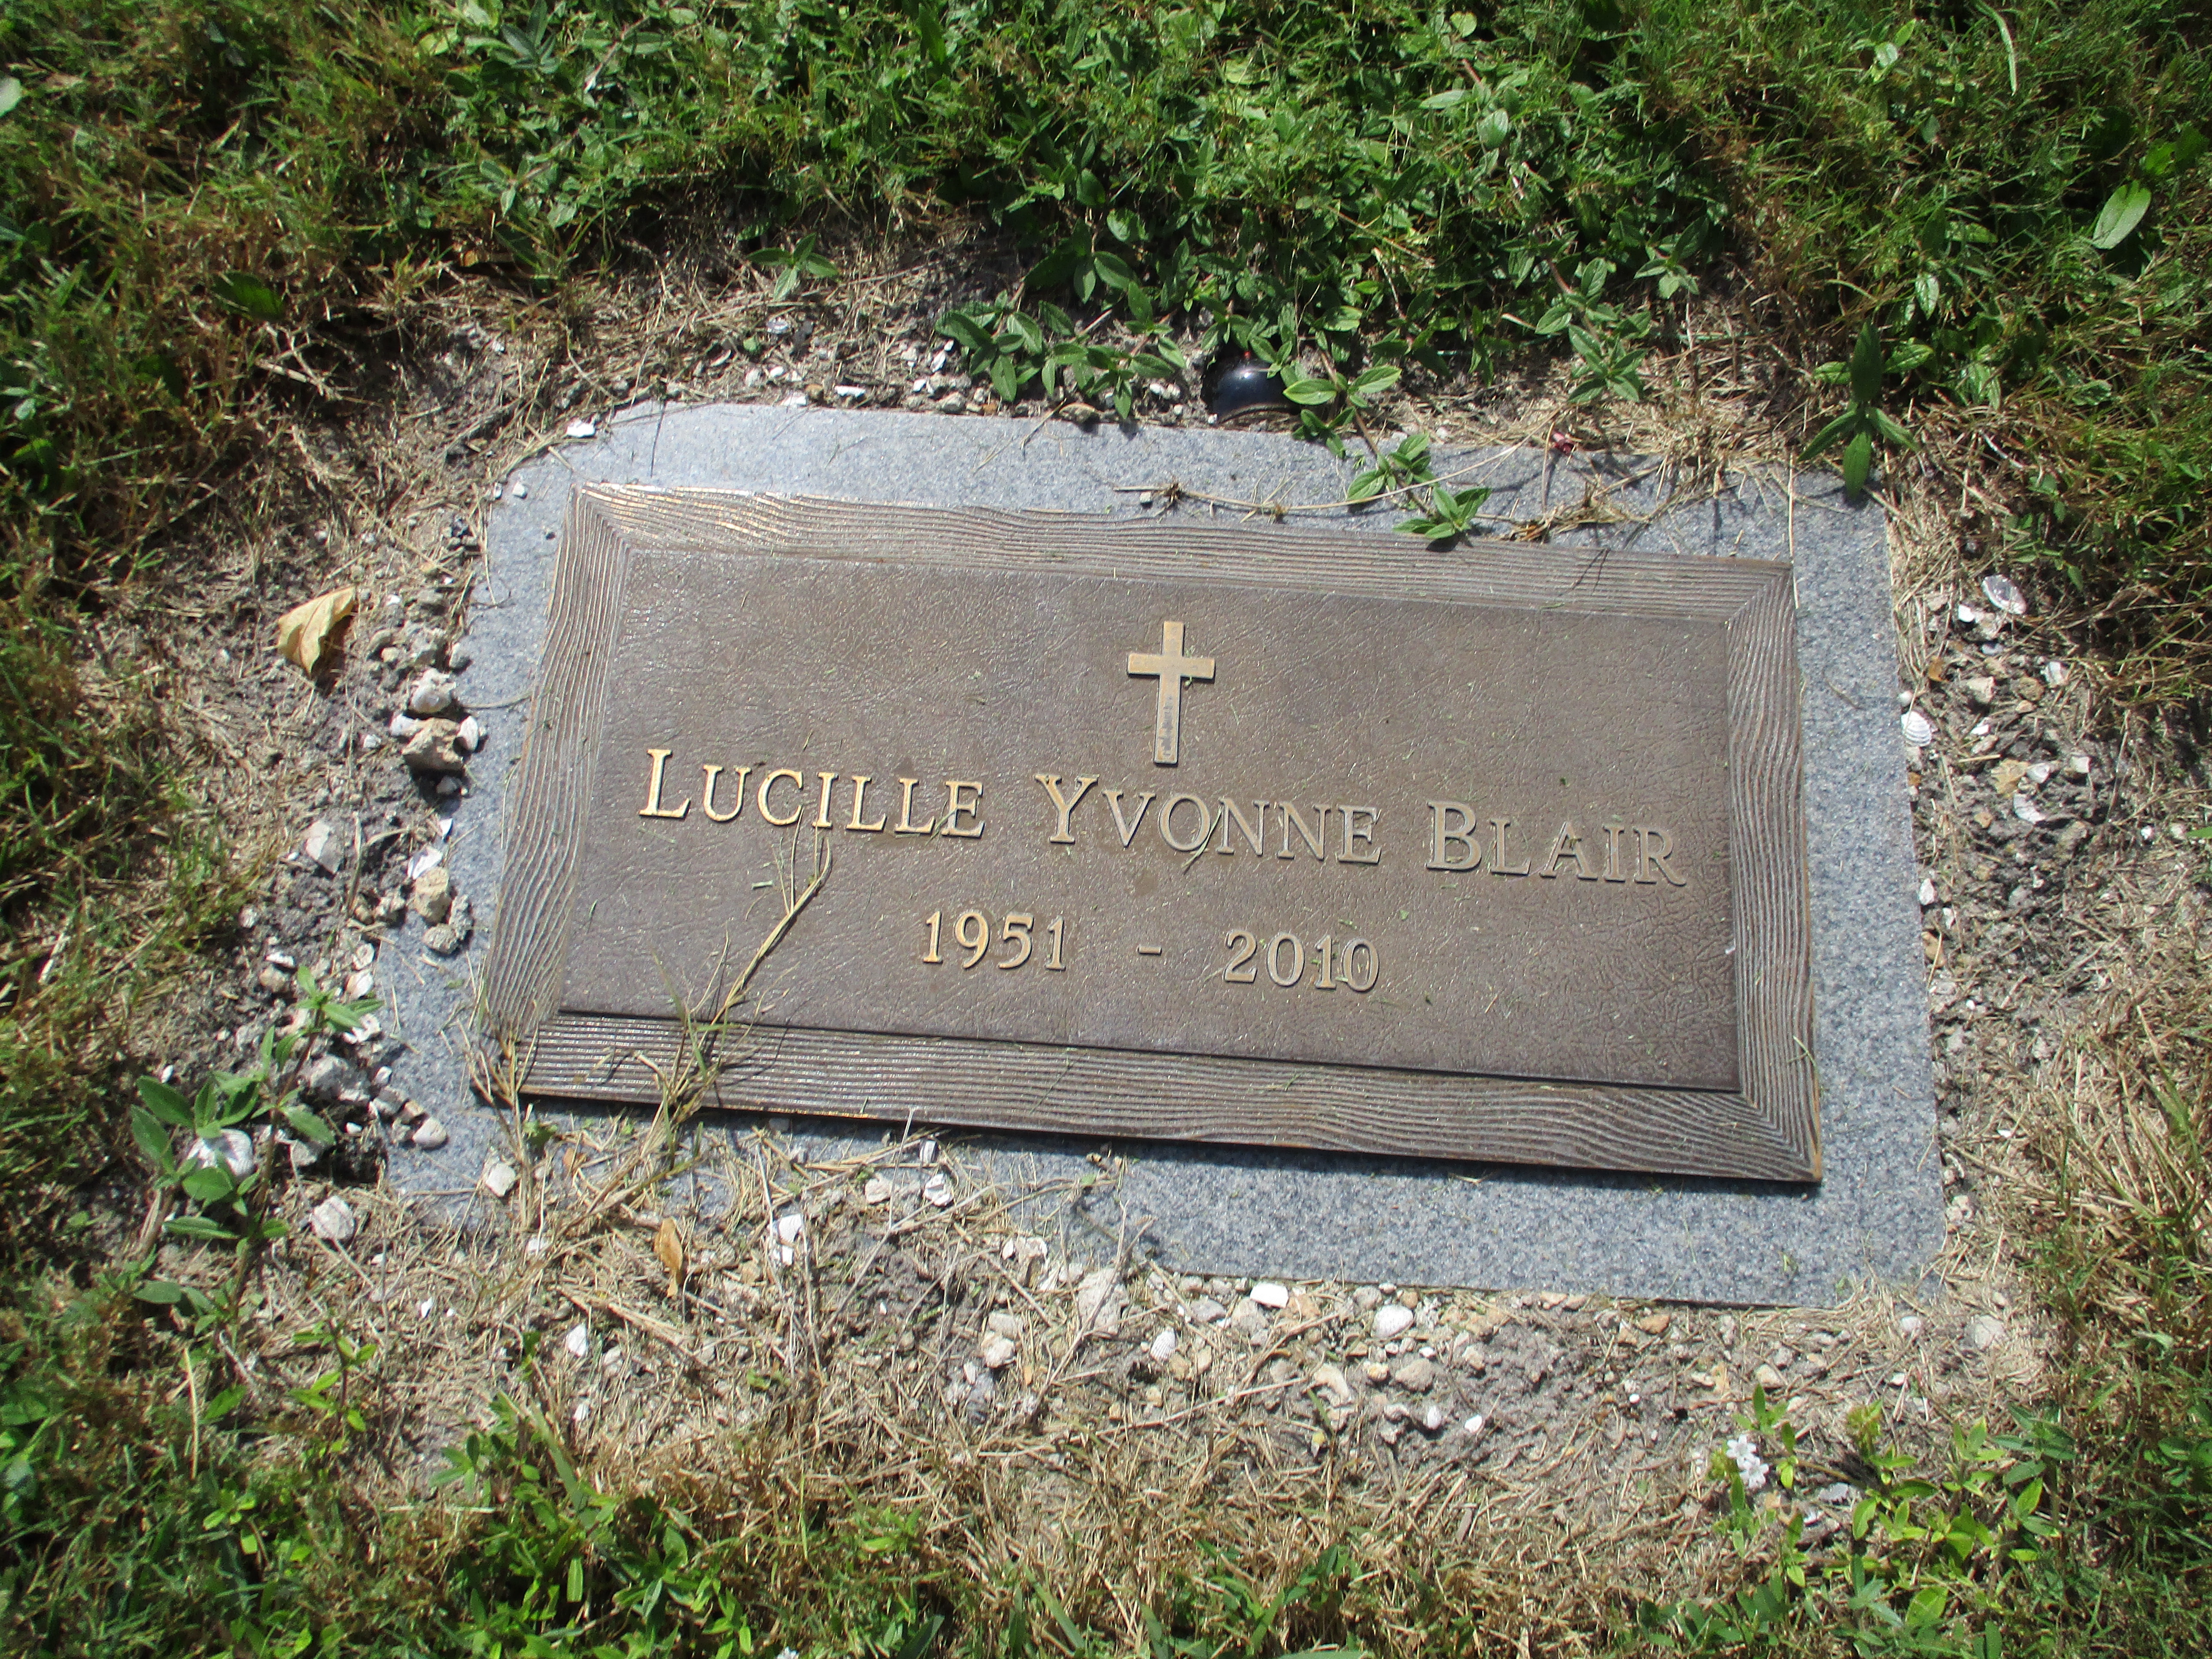 Lucille Yvonne Blair